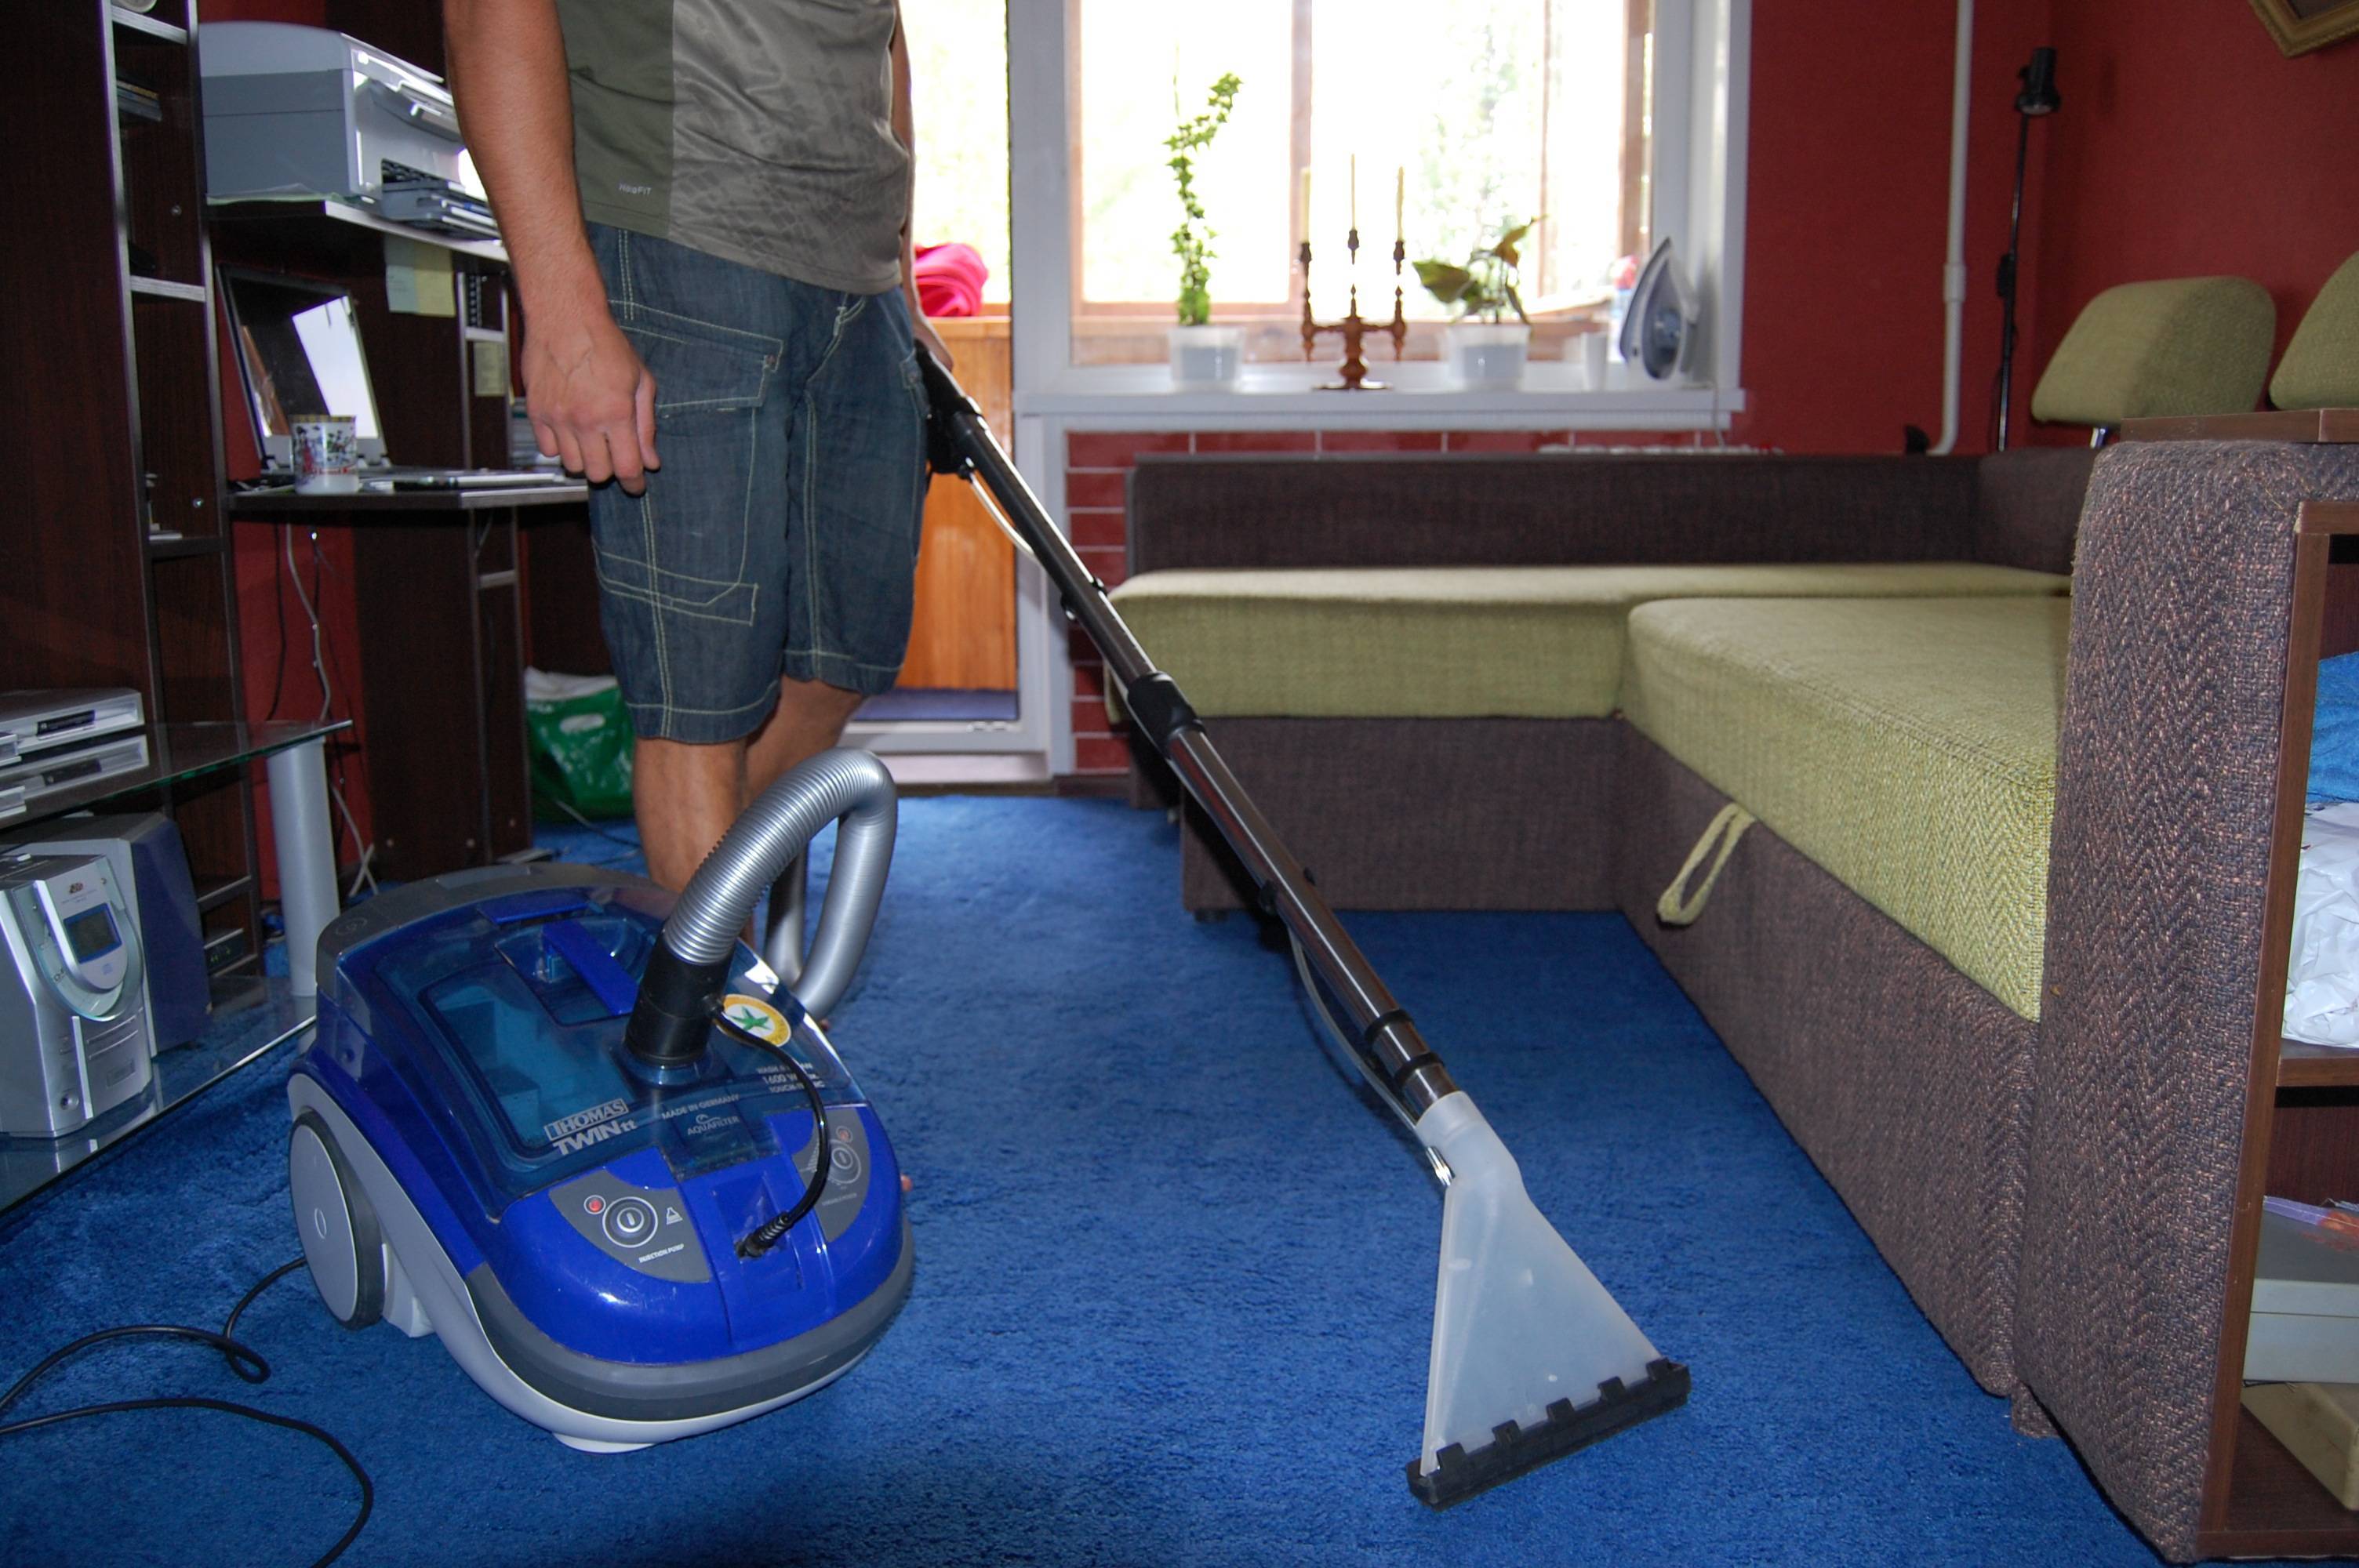 Стирка ковролина: как помыть ковролин в домашних условиях